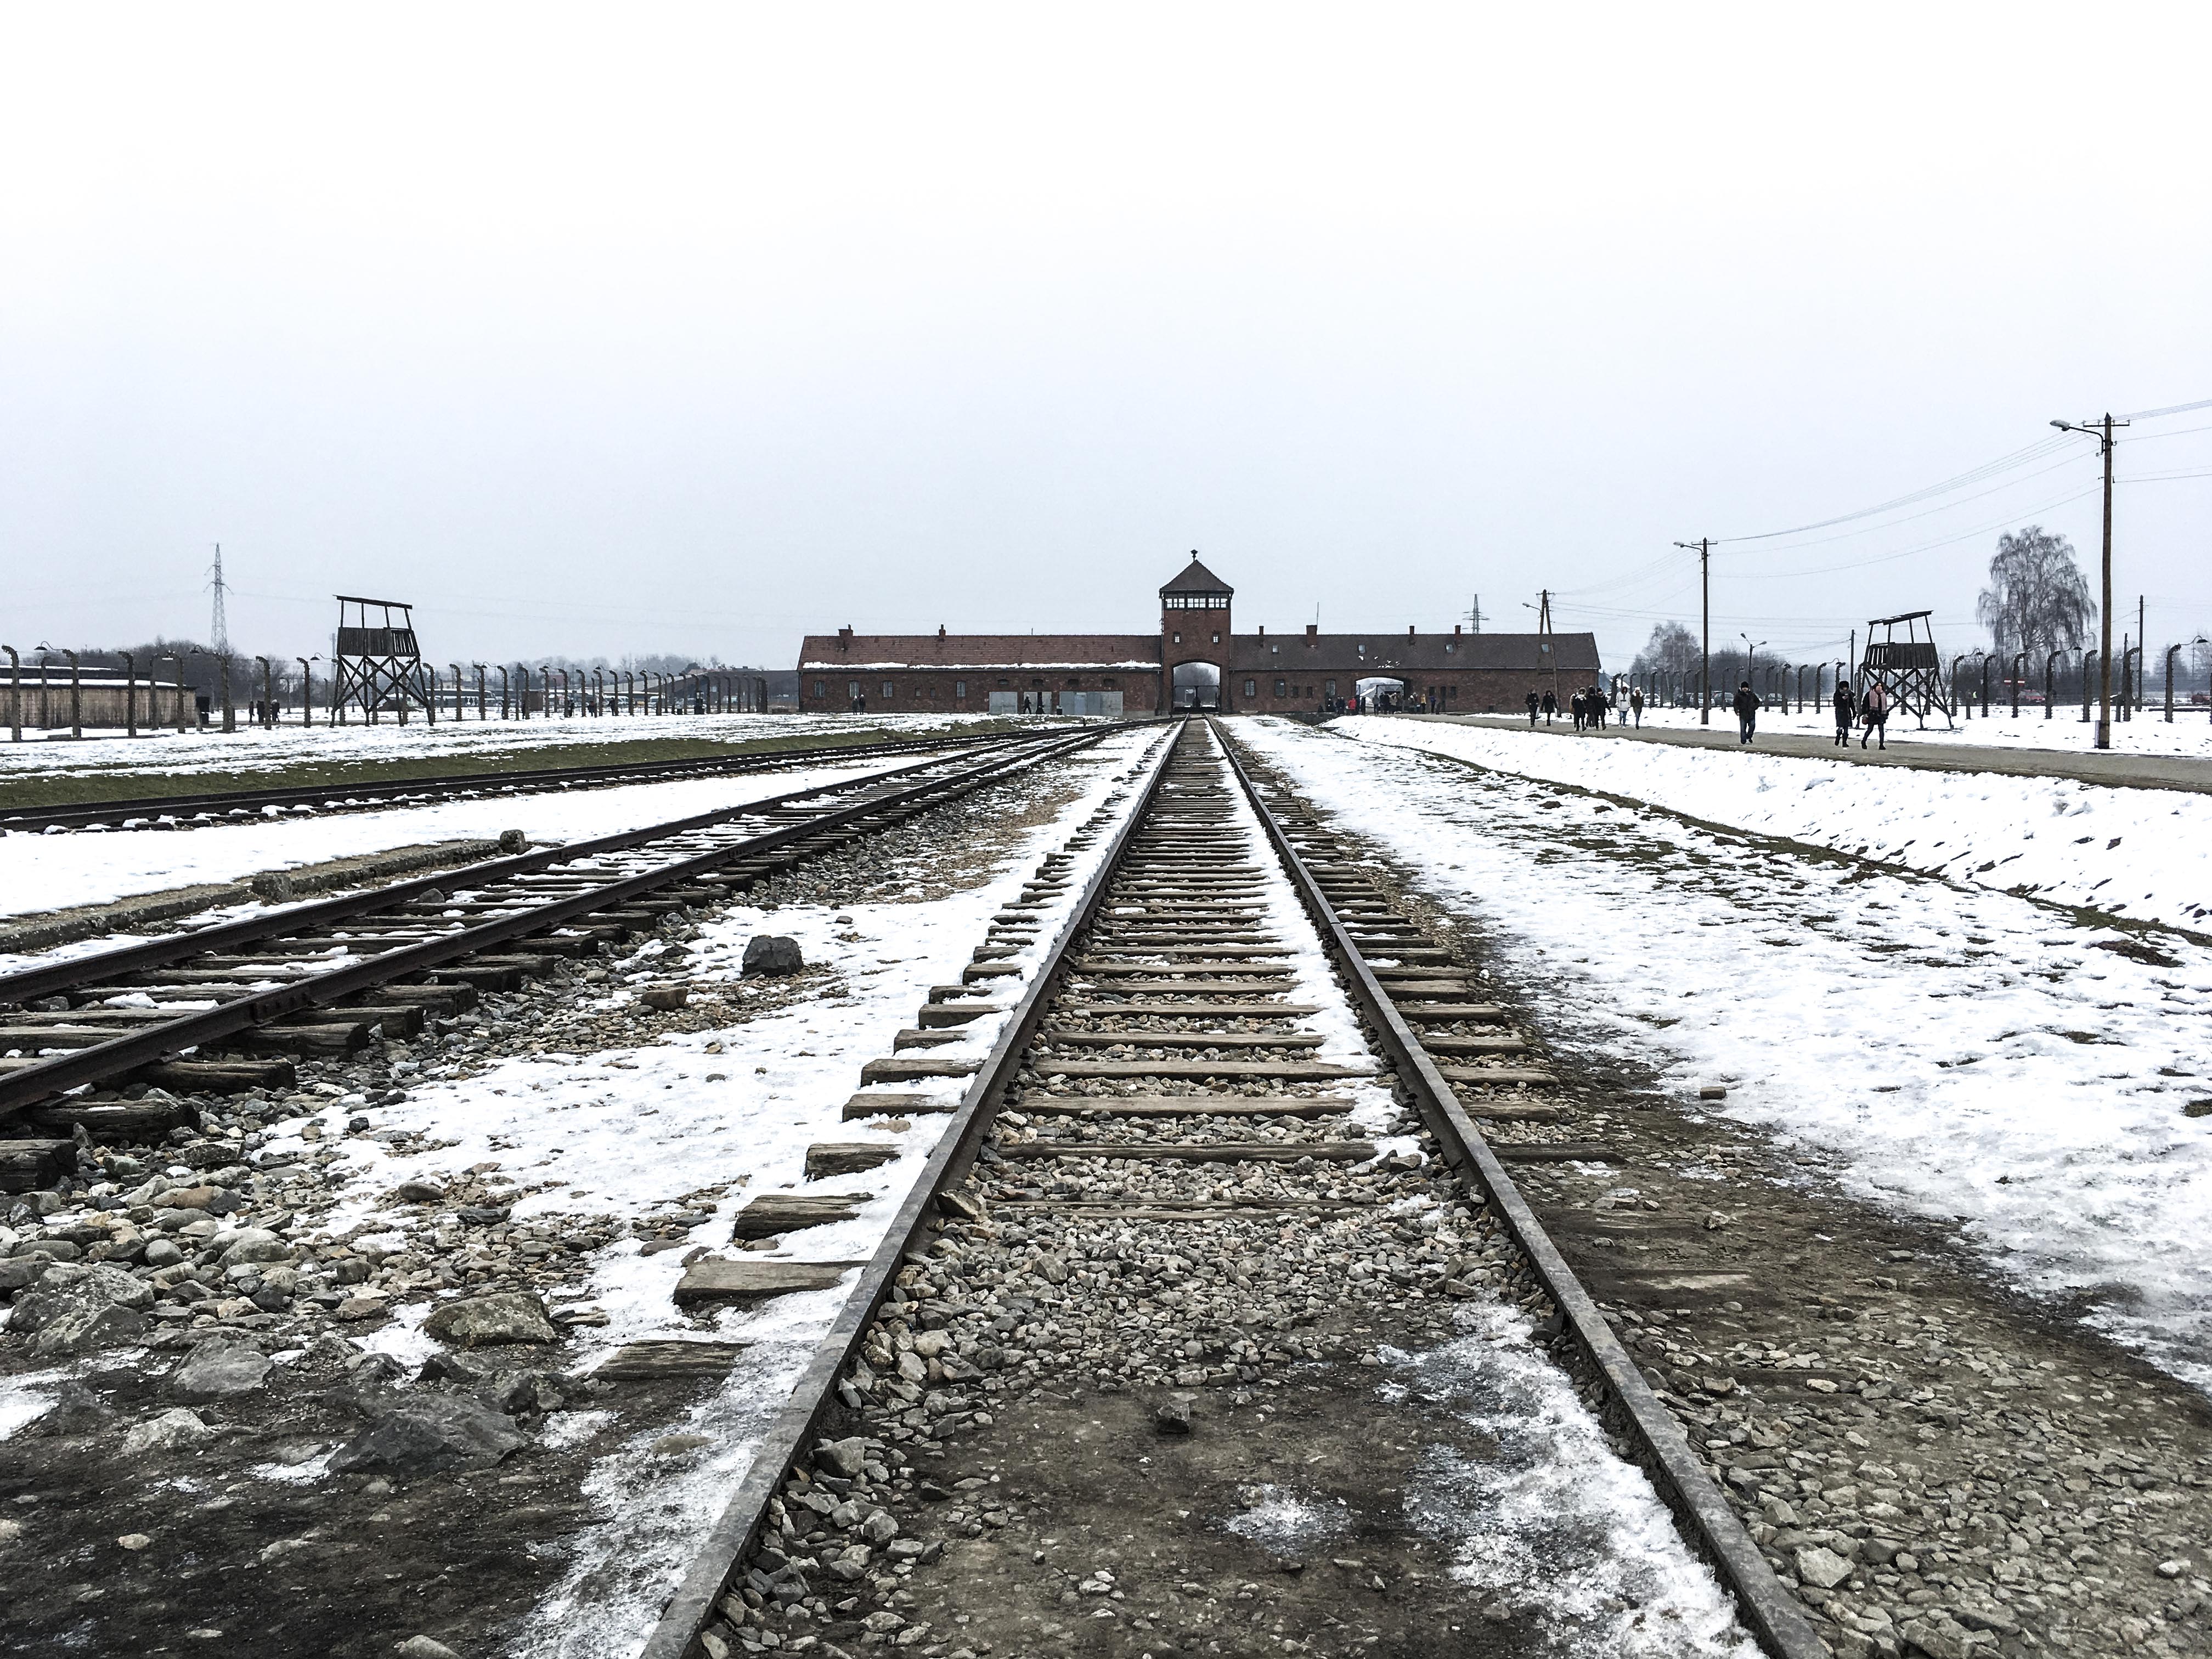 Choisir de visiter Auschwitz